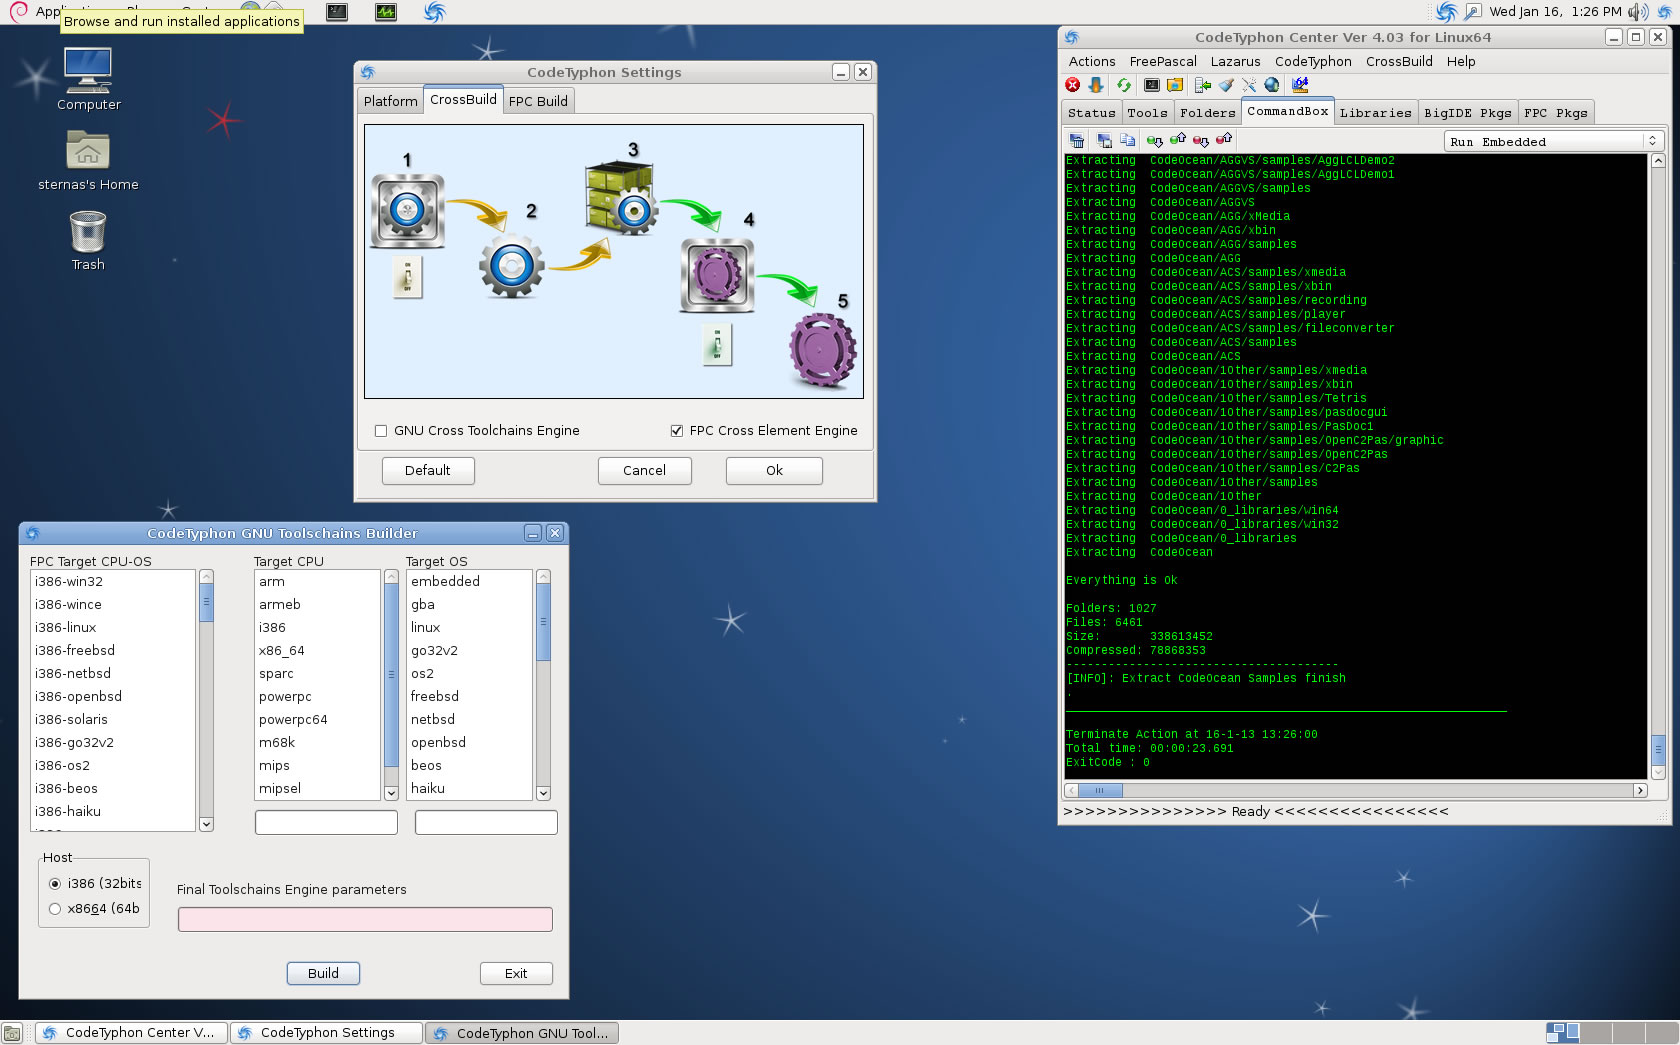 Debian64-1_2013-01-16.jpg